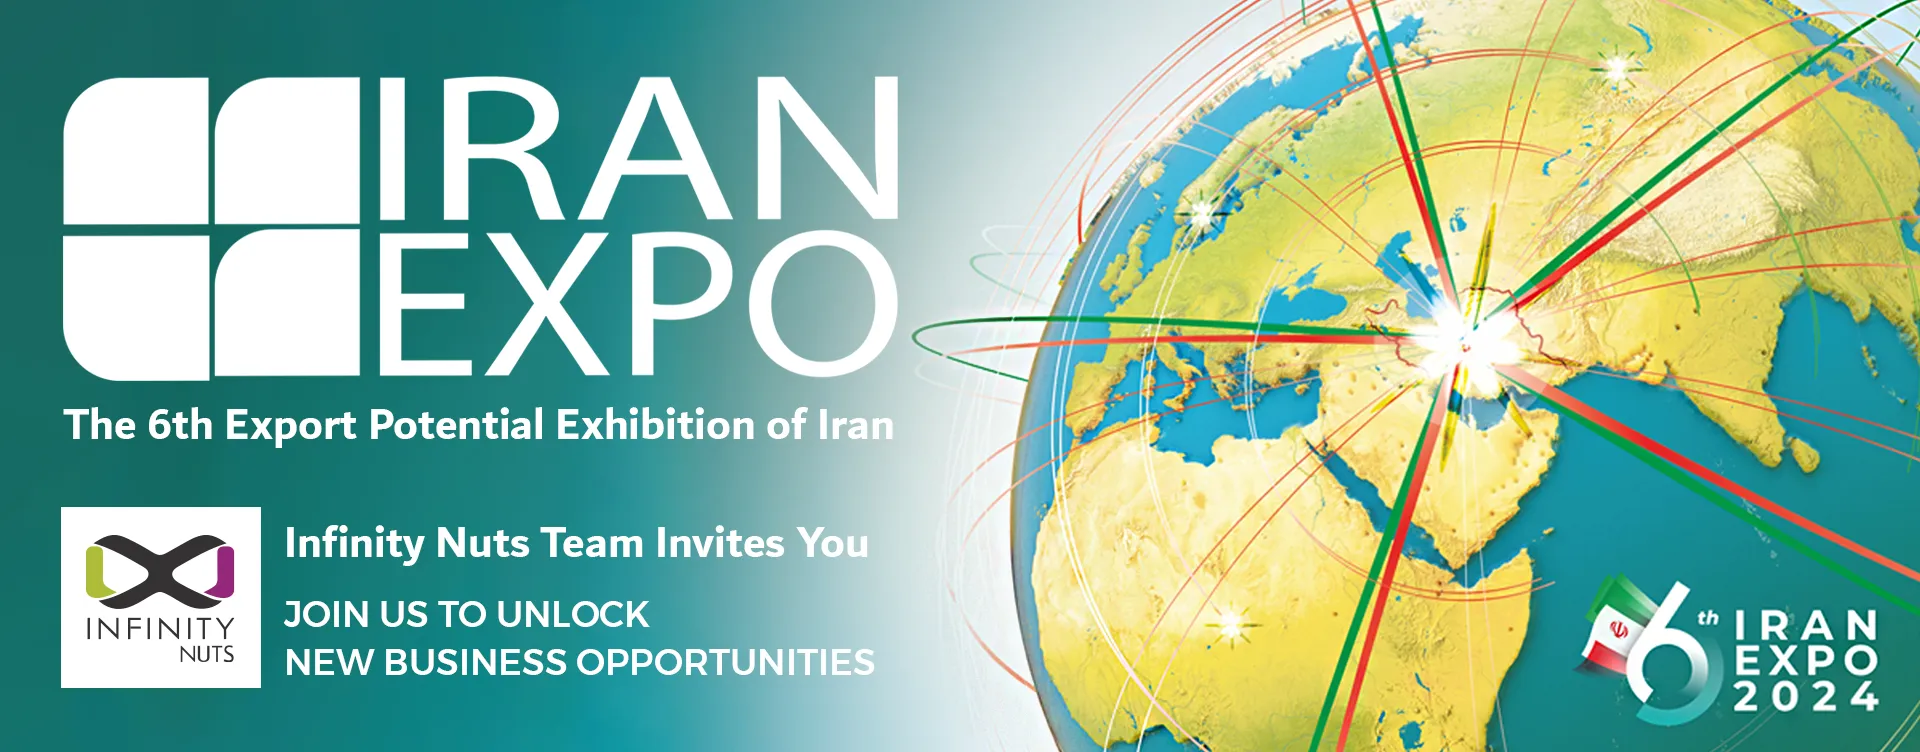 Iran EXPO